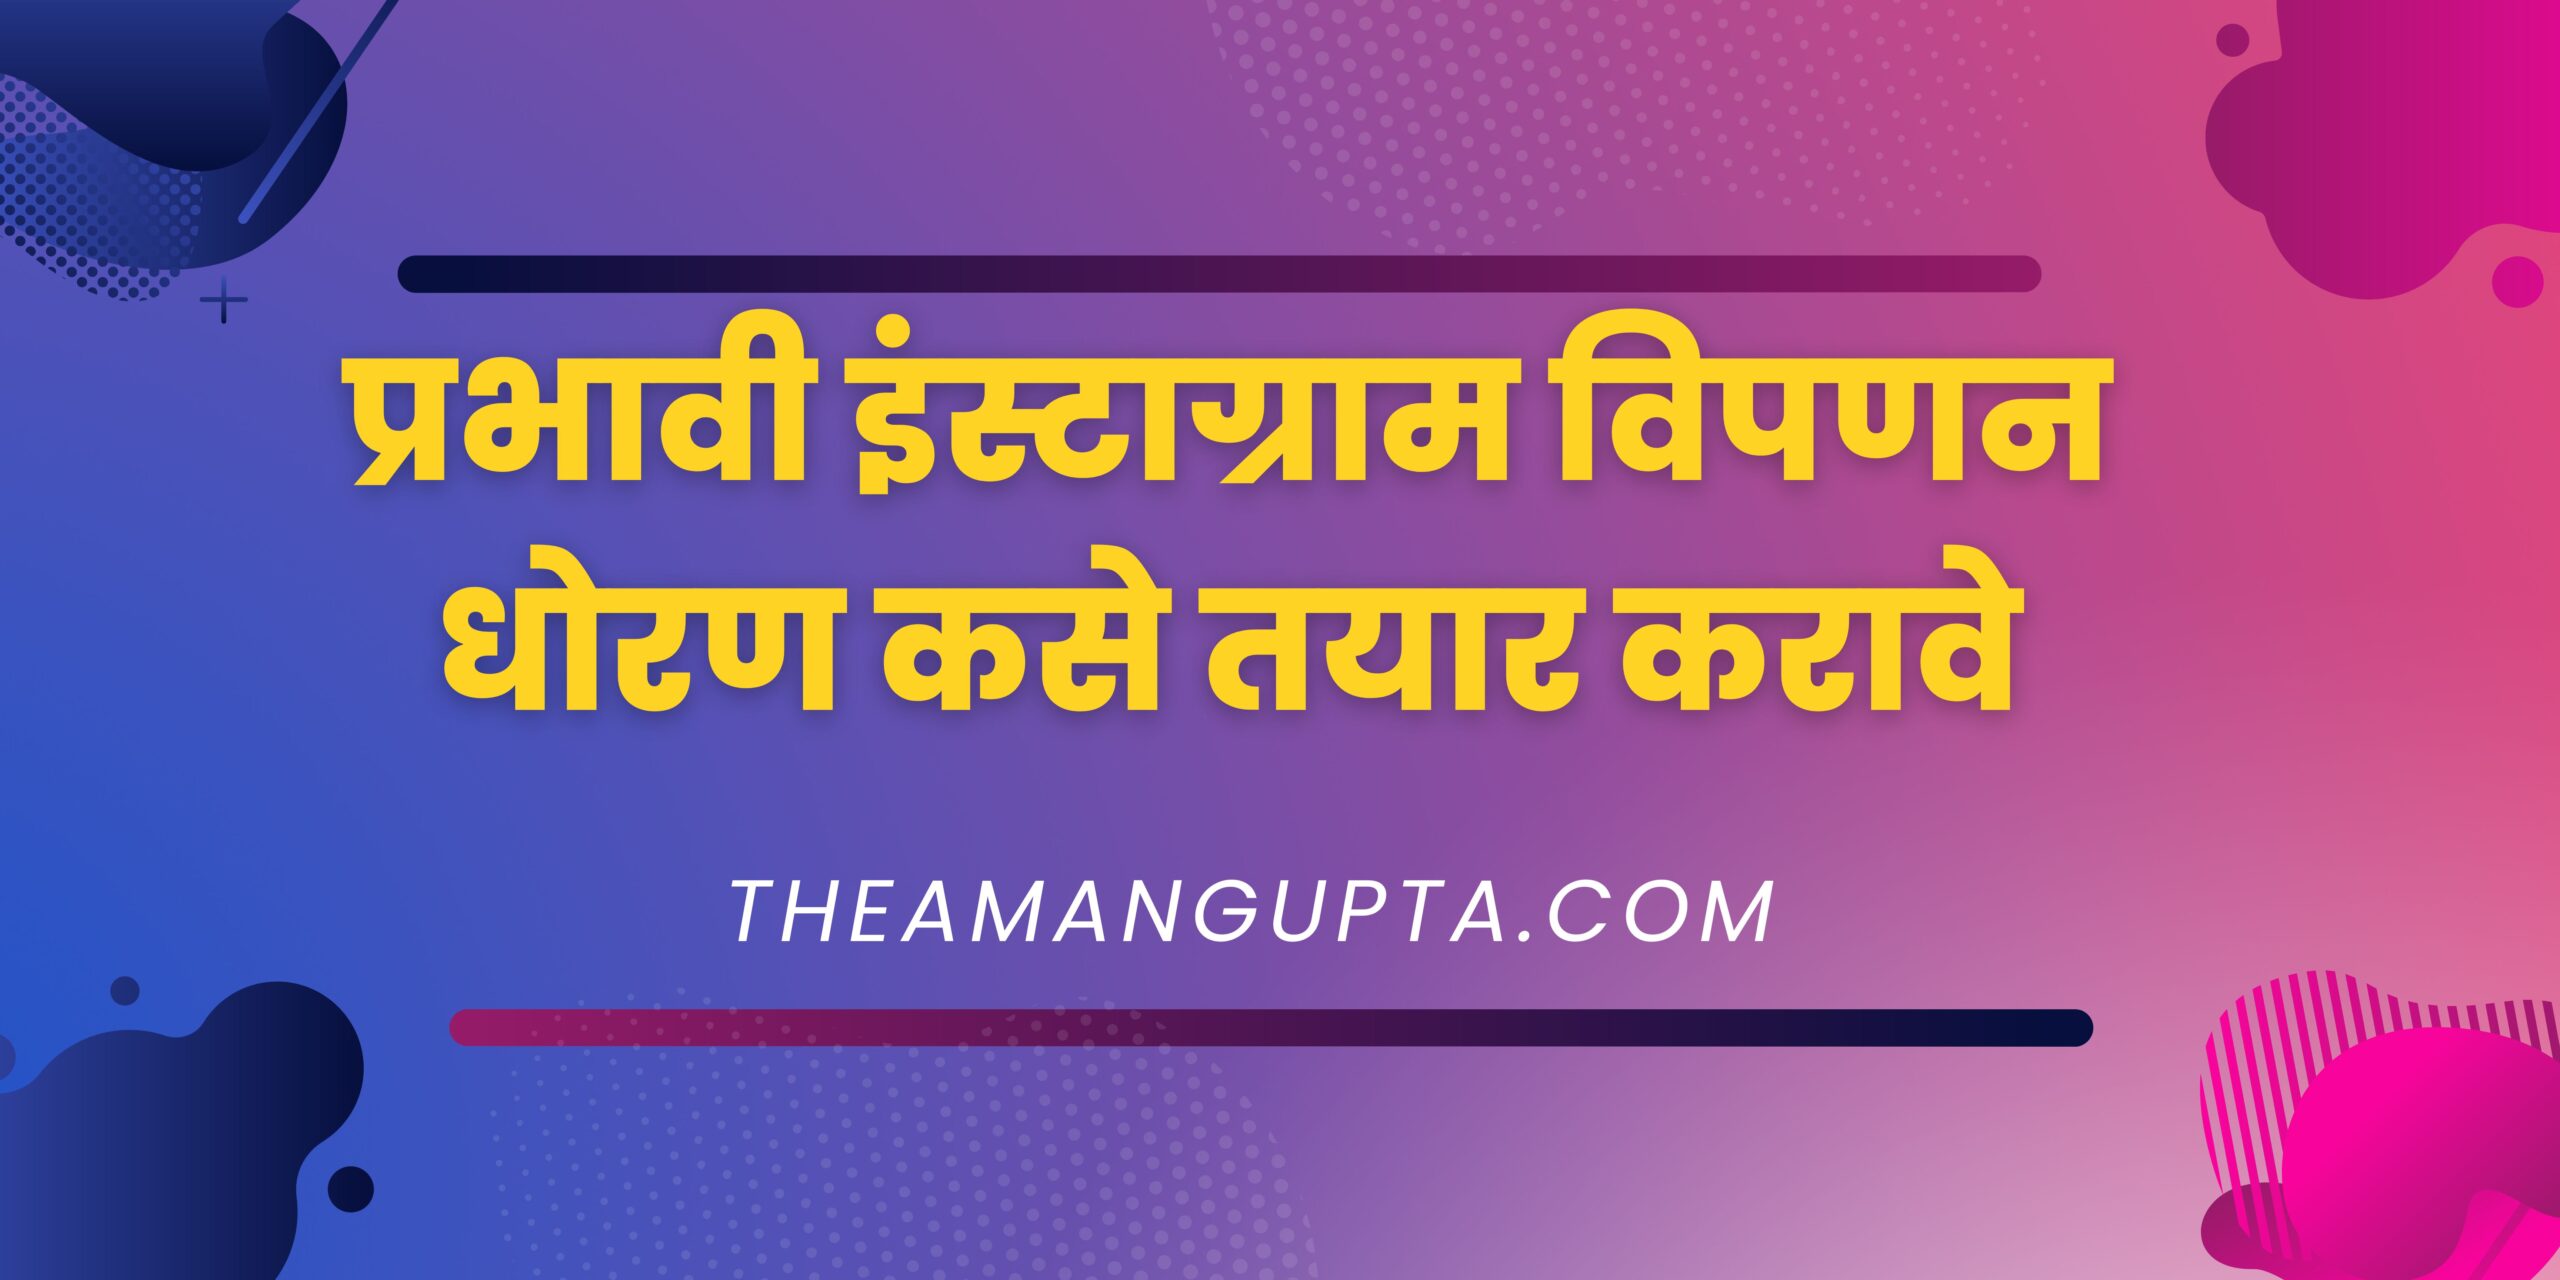 प्रभावी इंस्टाग्राम विपणन धोरण कसे तयार करावे|प्रभावी इंस्टाग्राम विपणन धोरण कसे तयार करावे|Theamangupta|Theamangupta